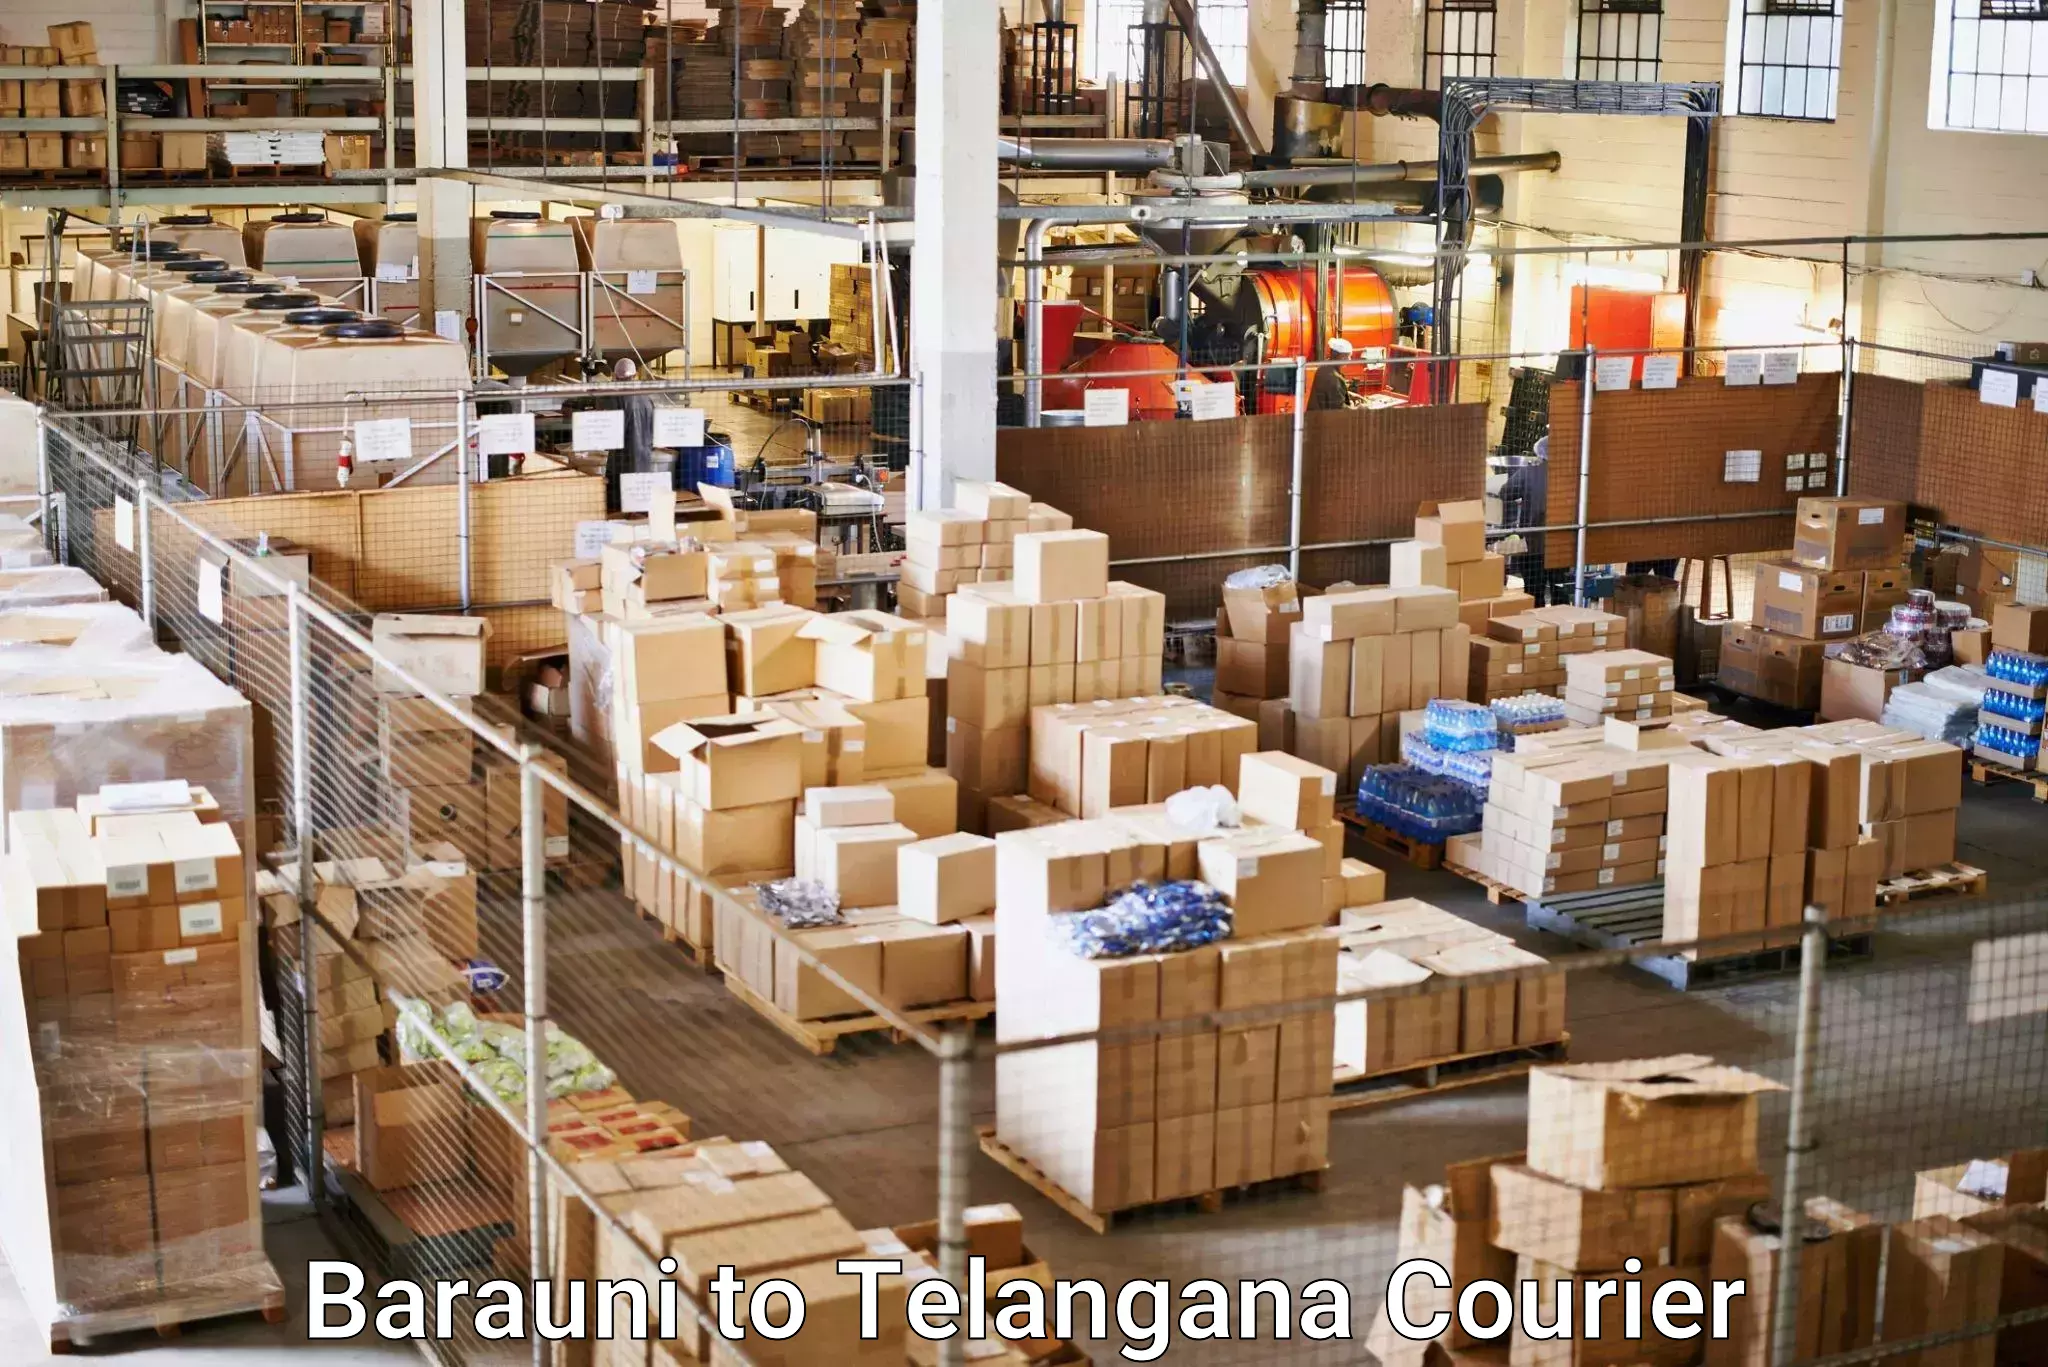 Urgent courier needs in Barauni to Achampet